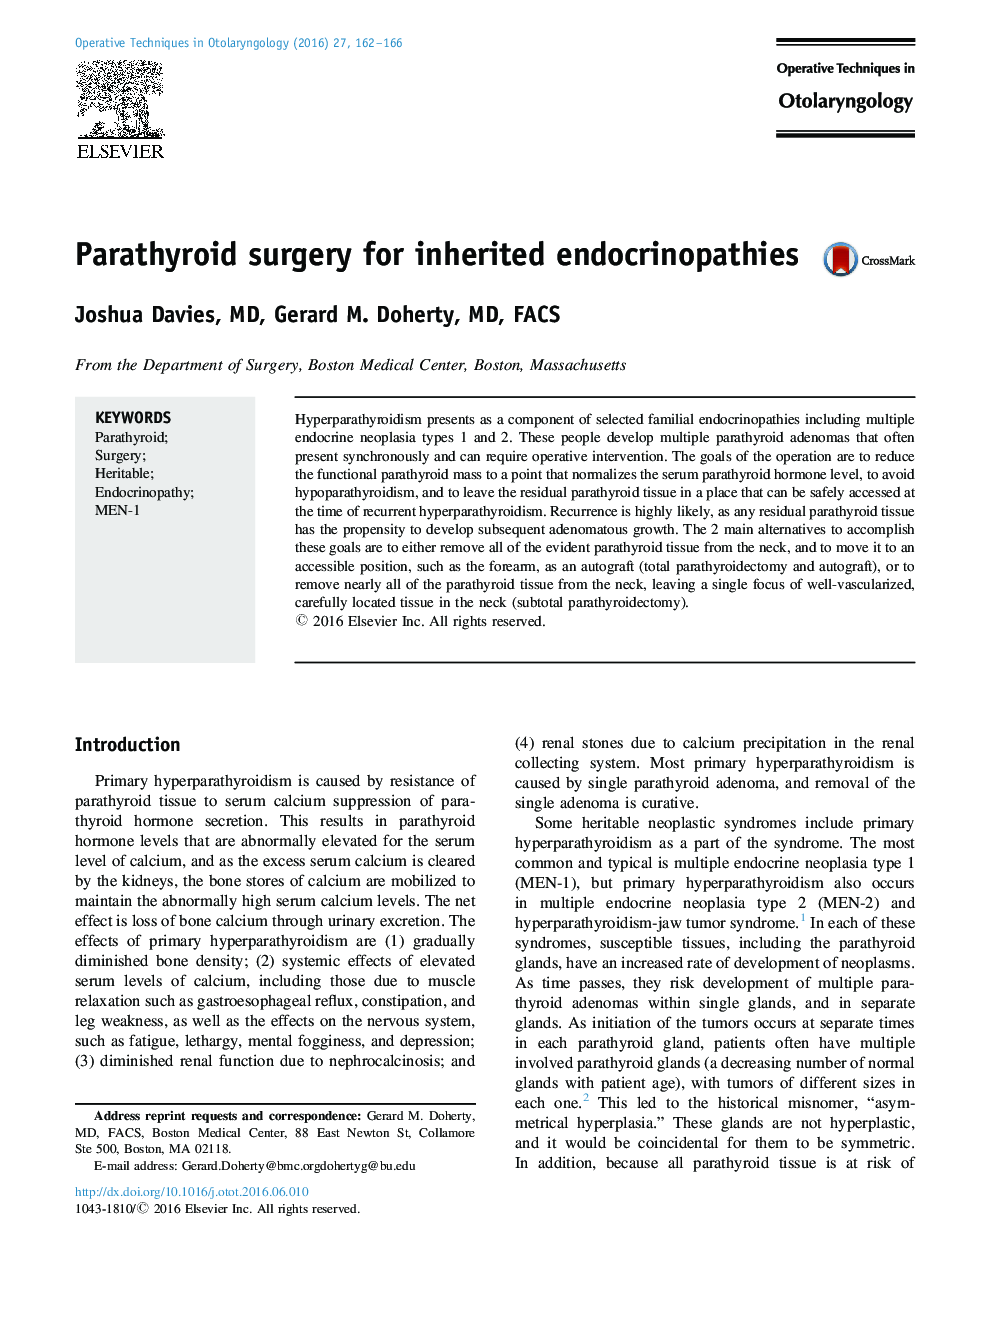 جراحی پاراتیروئید برای اندوکرینوپاتی های ارثی 